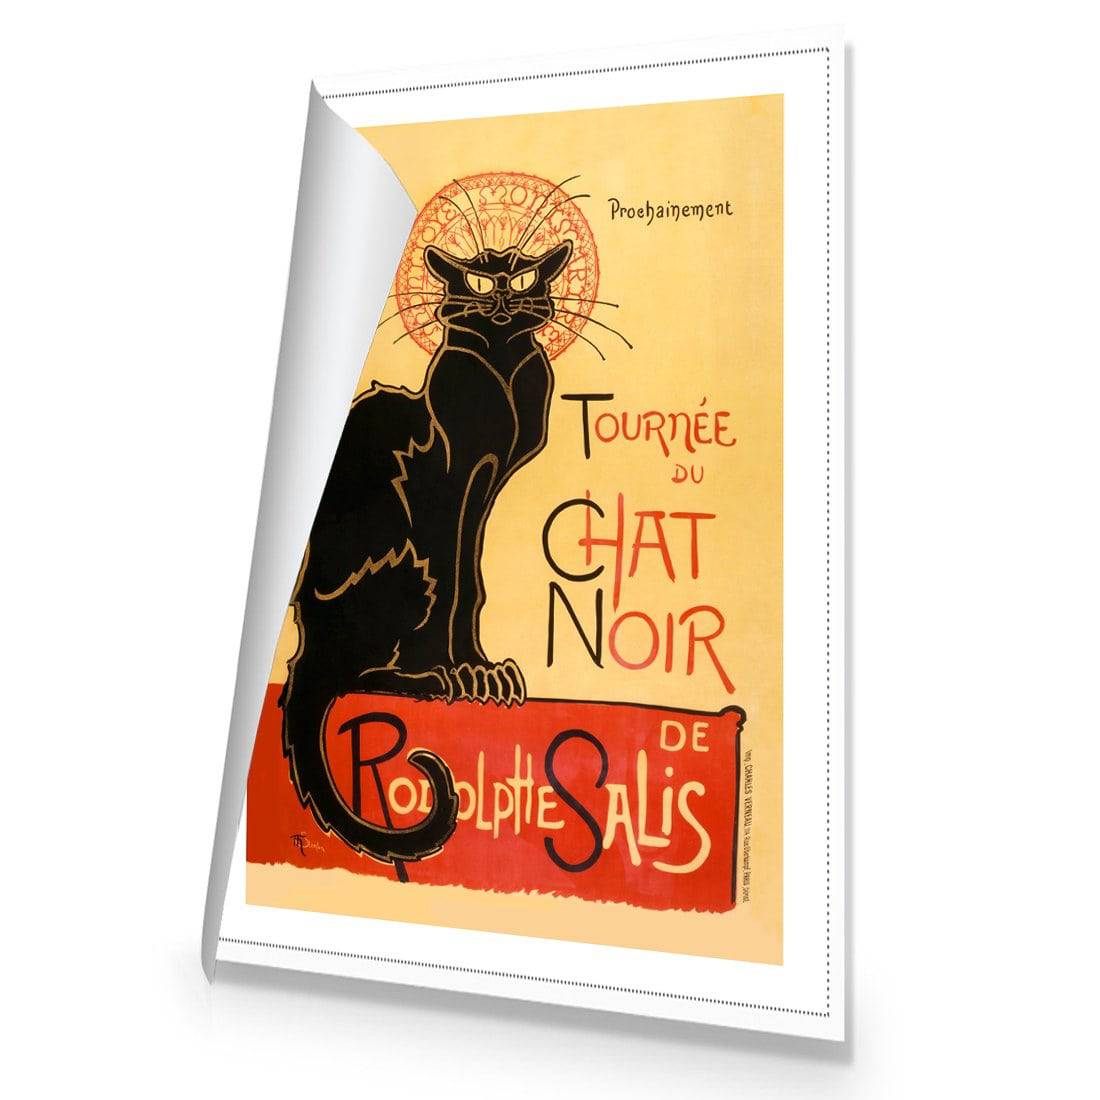 Le Chat Noir By Steinlen Canvas Art-Canvas-Wall Art Designs-45x30cm-Rolled Canvas-Wall Art Designs